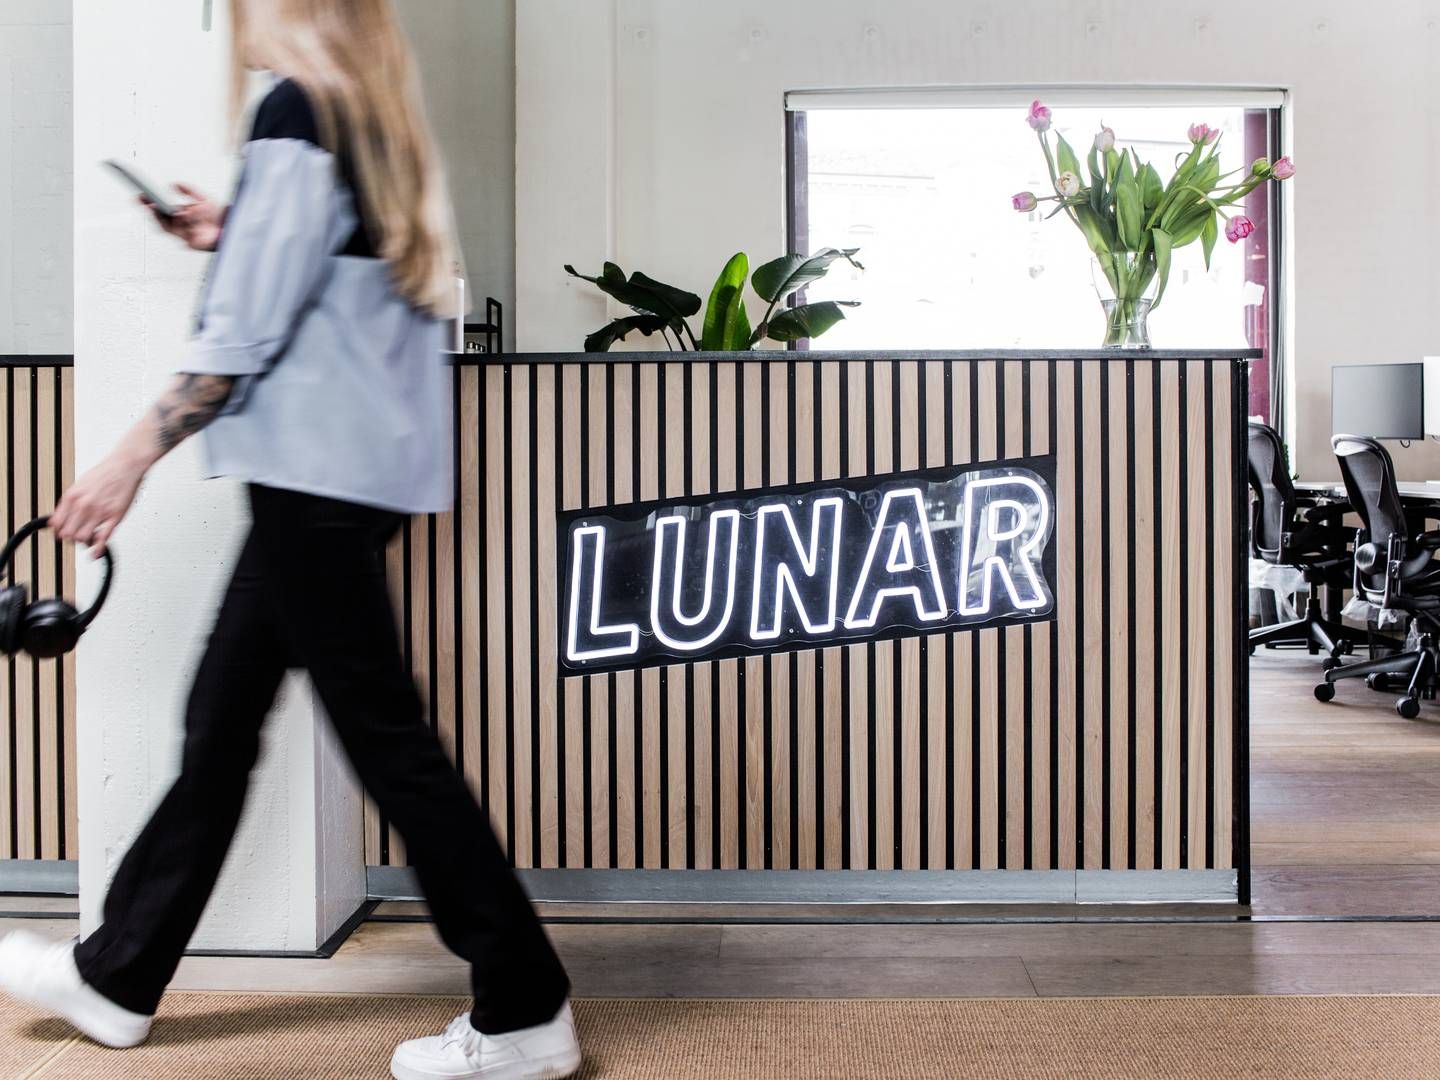 Lunar har haft et udfordrende år med kritik af Finanstilsynet samt en brast drøm om at opkøbe konkurrent. | Foto: Pr/lunar Bank